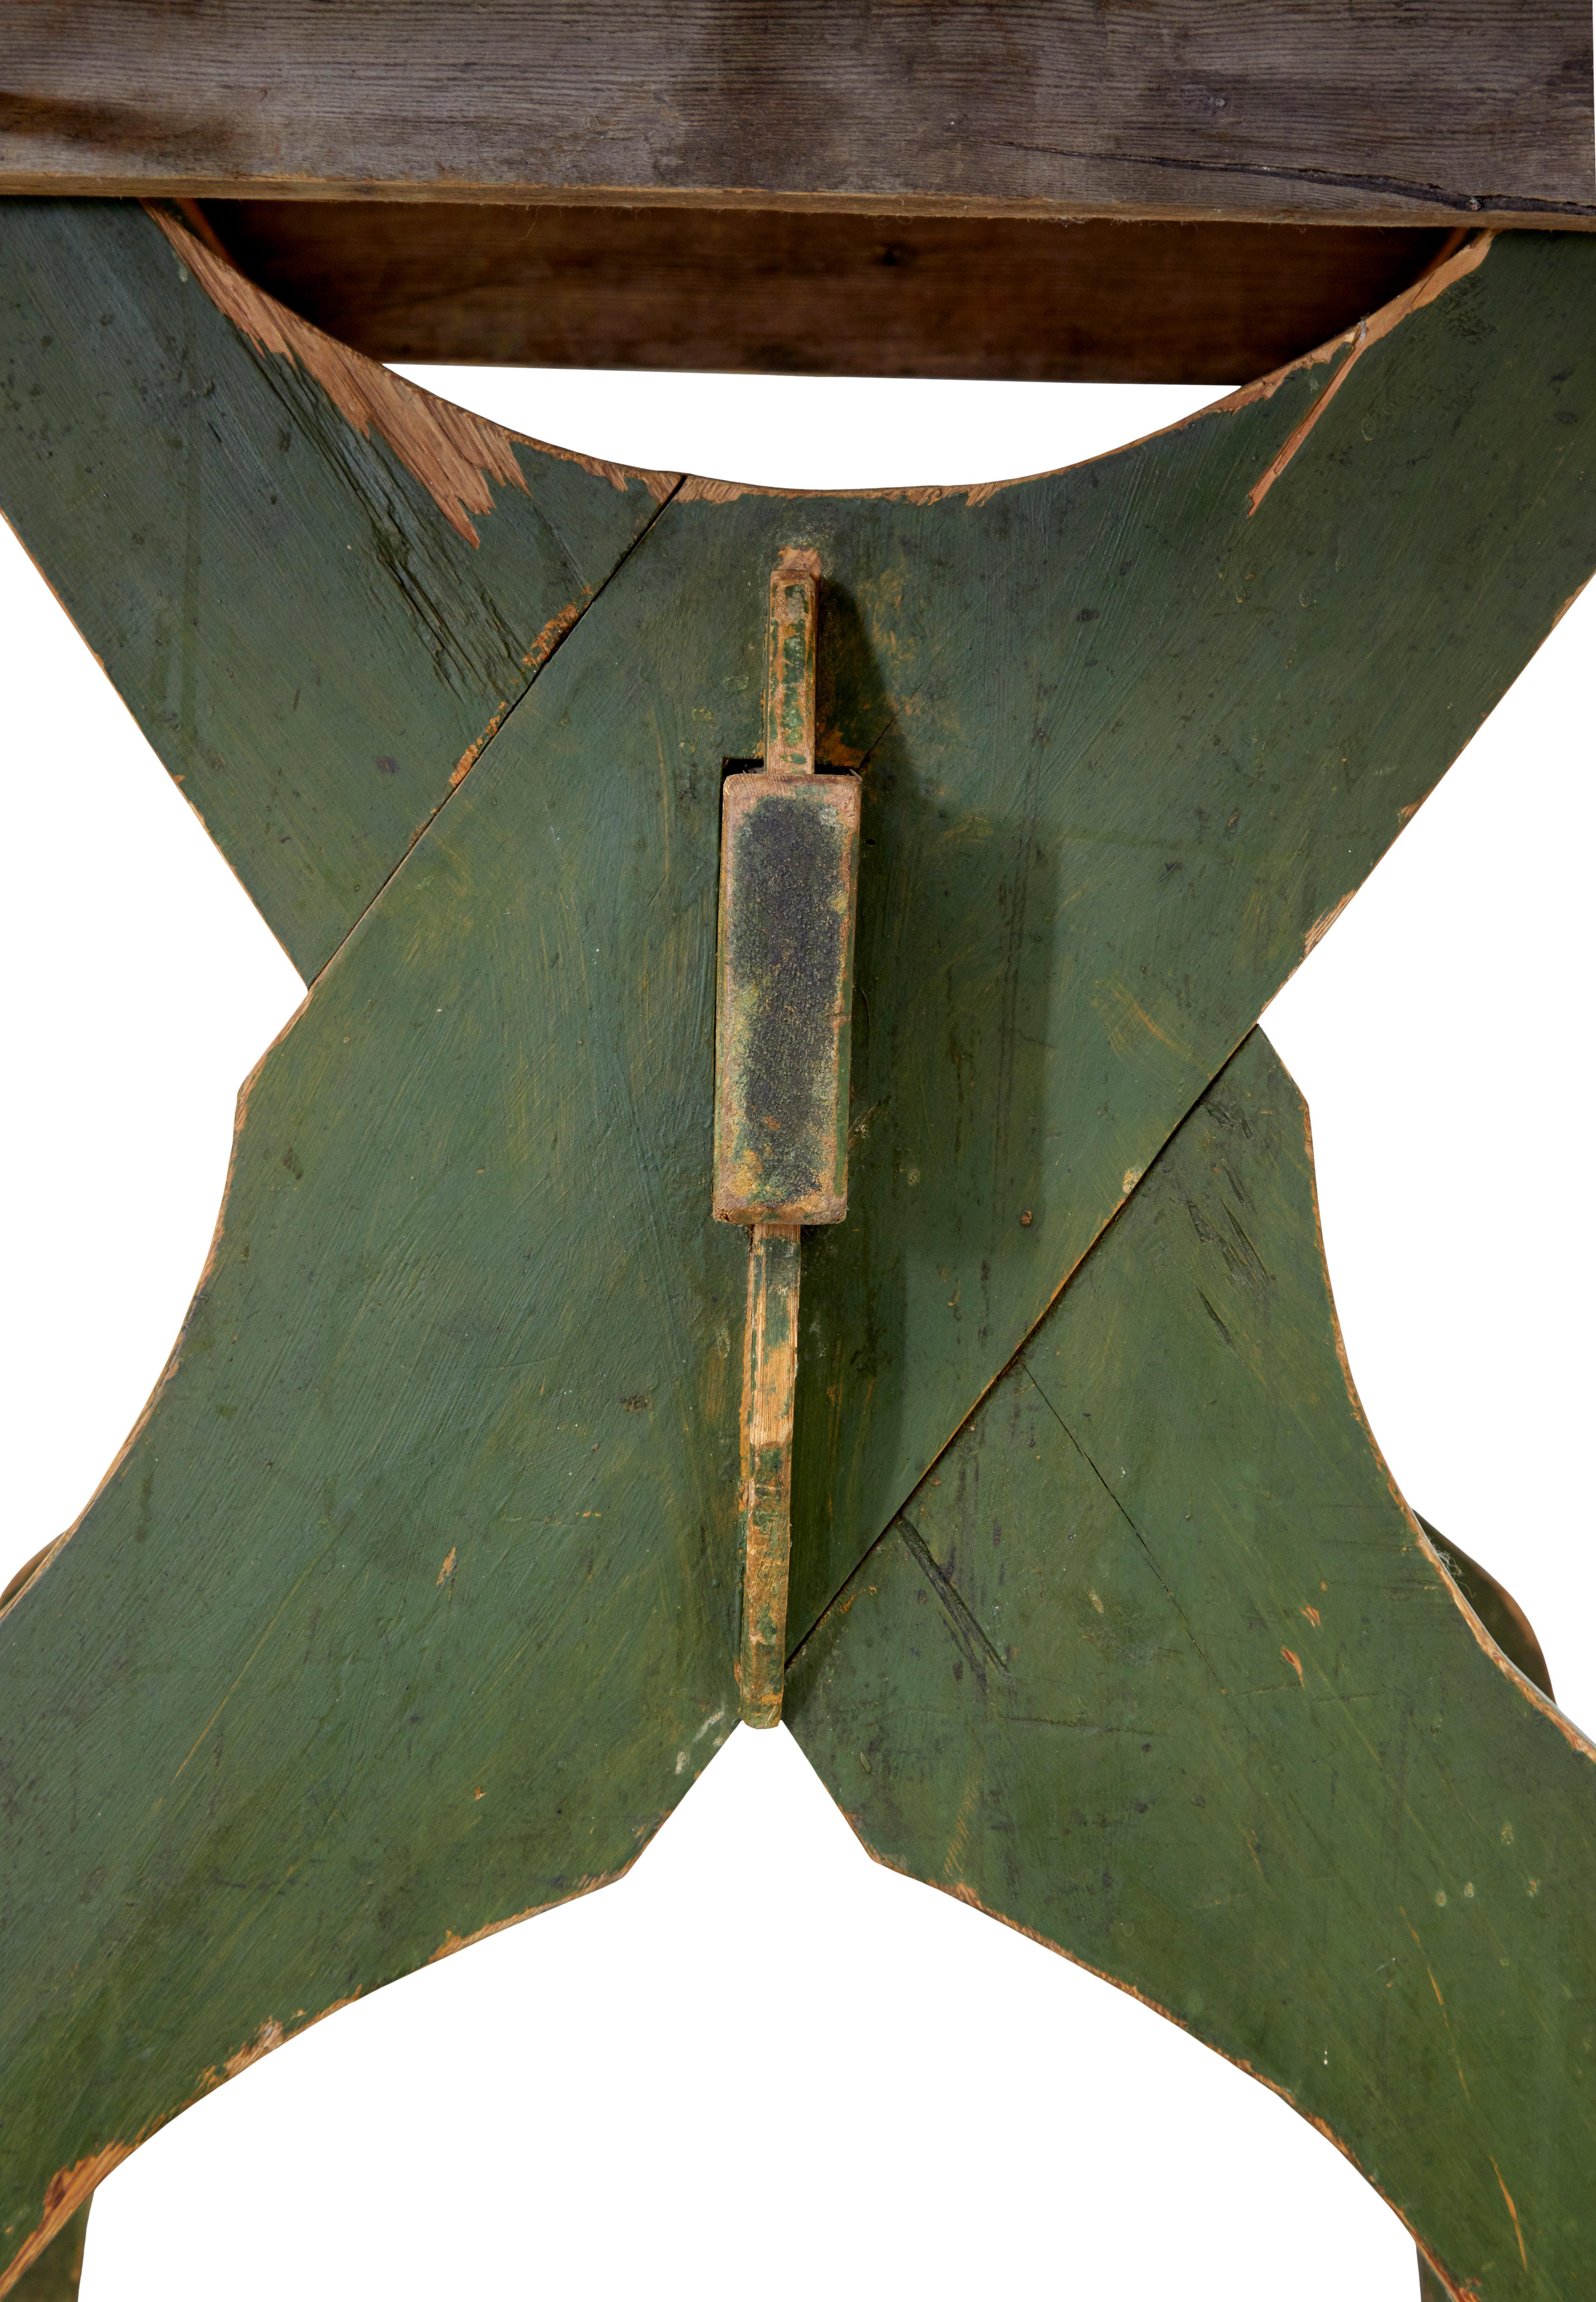 Insolite table rustique en pin suédois vers 1880.

Dessus amovible à 3 planches avec coins arrondis.  Elle repose sur une base en forme de cadre en x avec peinture d'origine, maintenue en place par un châssis et des chevilles.

Idéale comme table